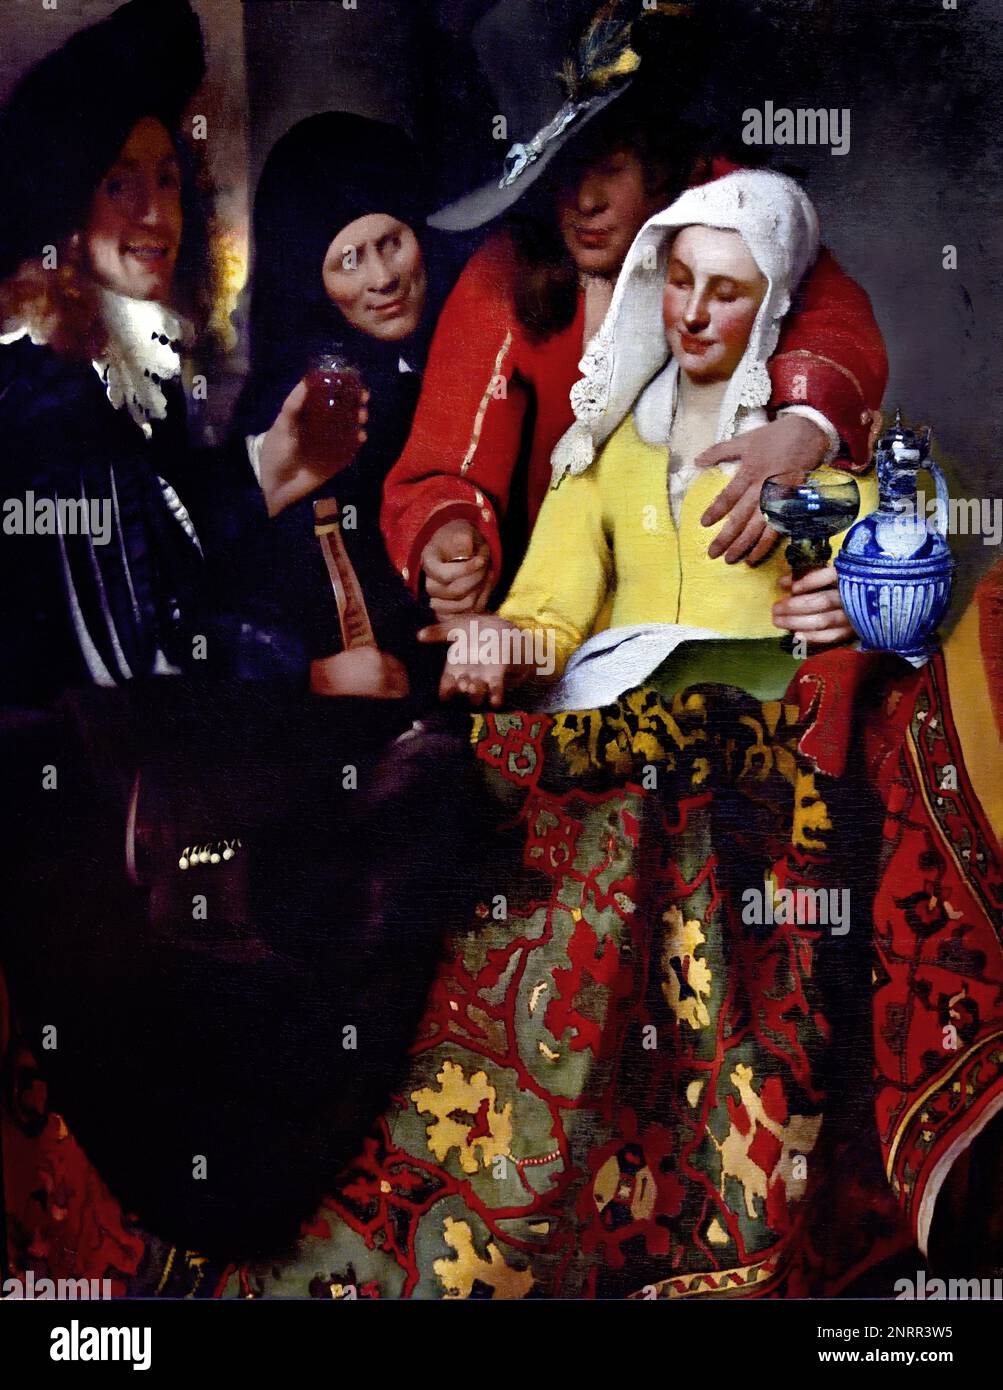 The Procuress 1656 von Johannes Vermeer oder Jan Vermeer 1632 - 1675, Delft, Niederlande, Niederländisch, Holland, (Holländischer Maler im Goldenen Zeitalter, einer der größten Maler des 17. Jahrhunderts. Bevorzugte zeitlose, gedämpfte Momente, bleibt rätselhaft, unnachahmliches Farbschema und verwirrender Lichtinhalt) Stockfoto